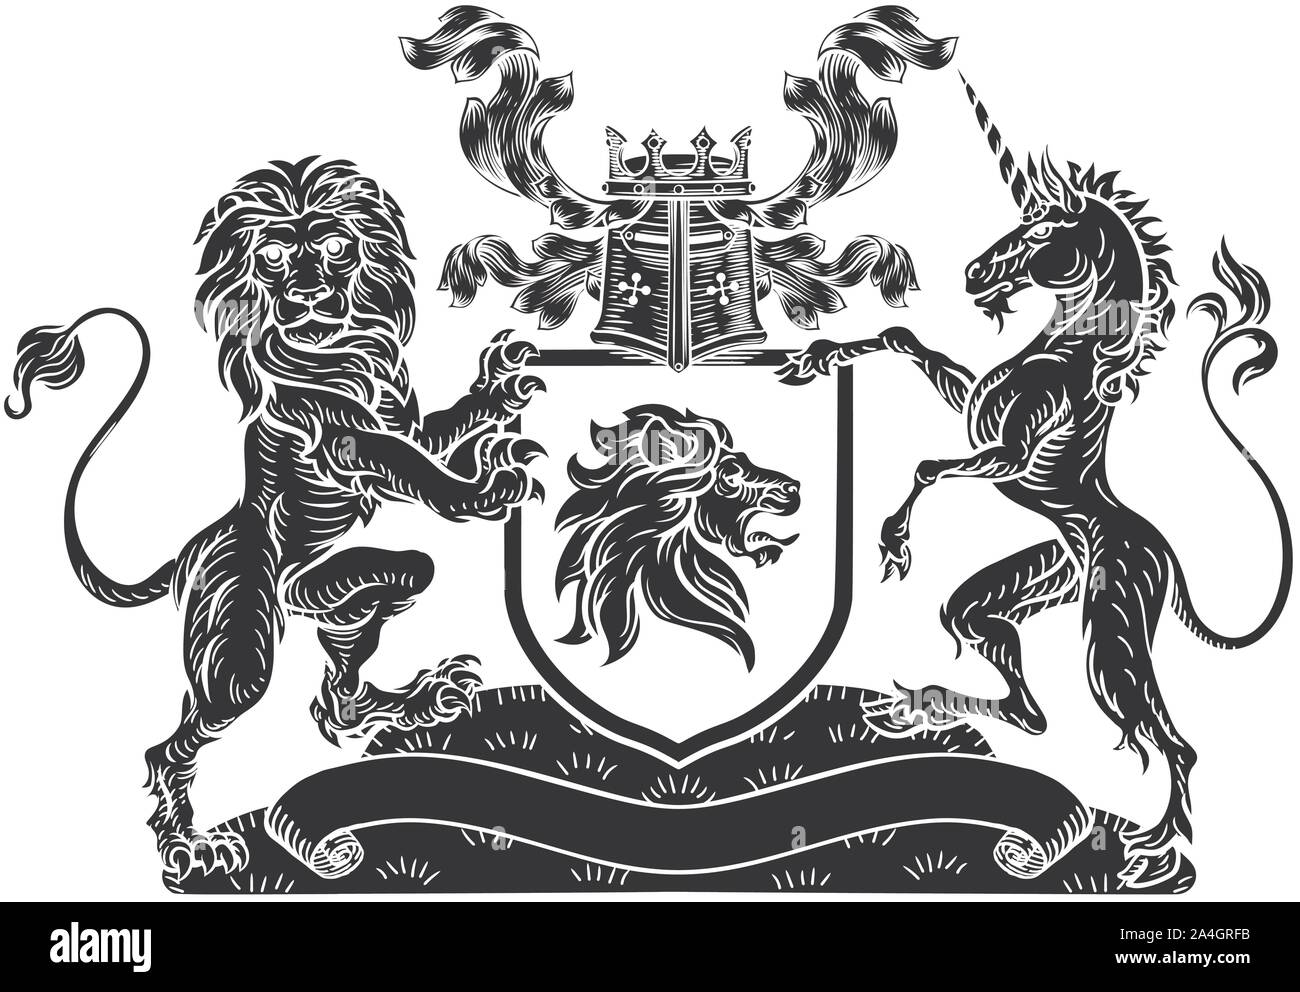 Licorne Lion Crest Armoiries Bouclier Héraldique Illustration de Vecteur